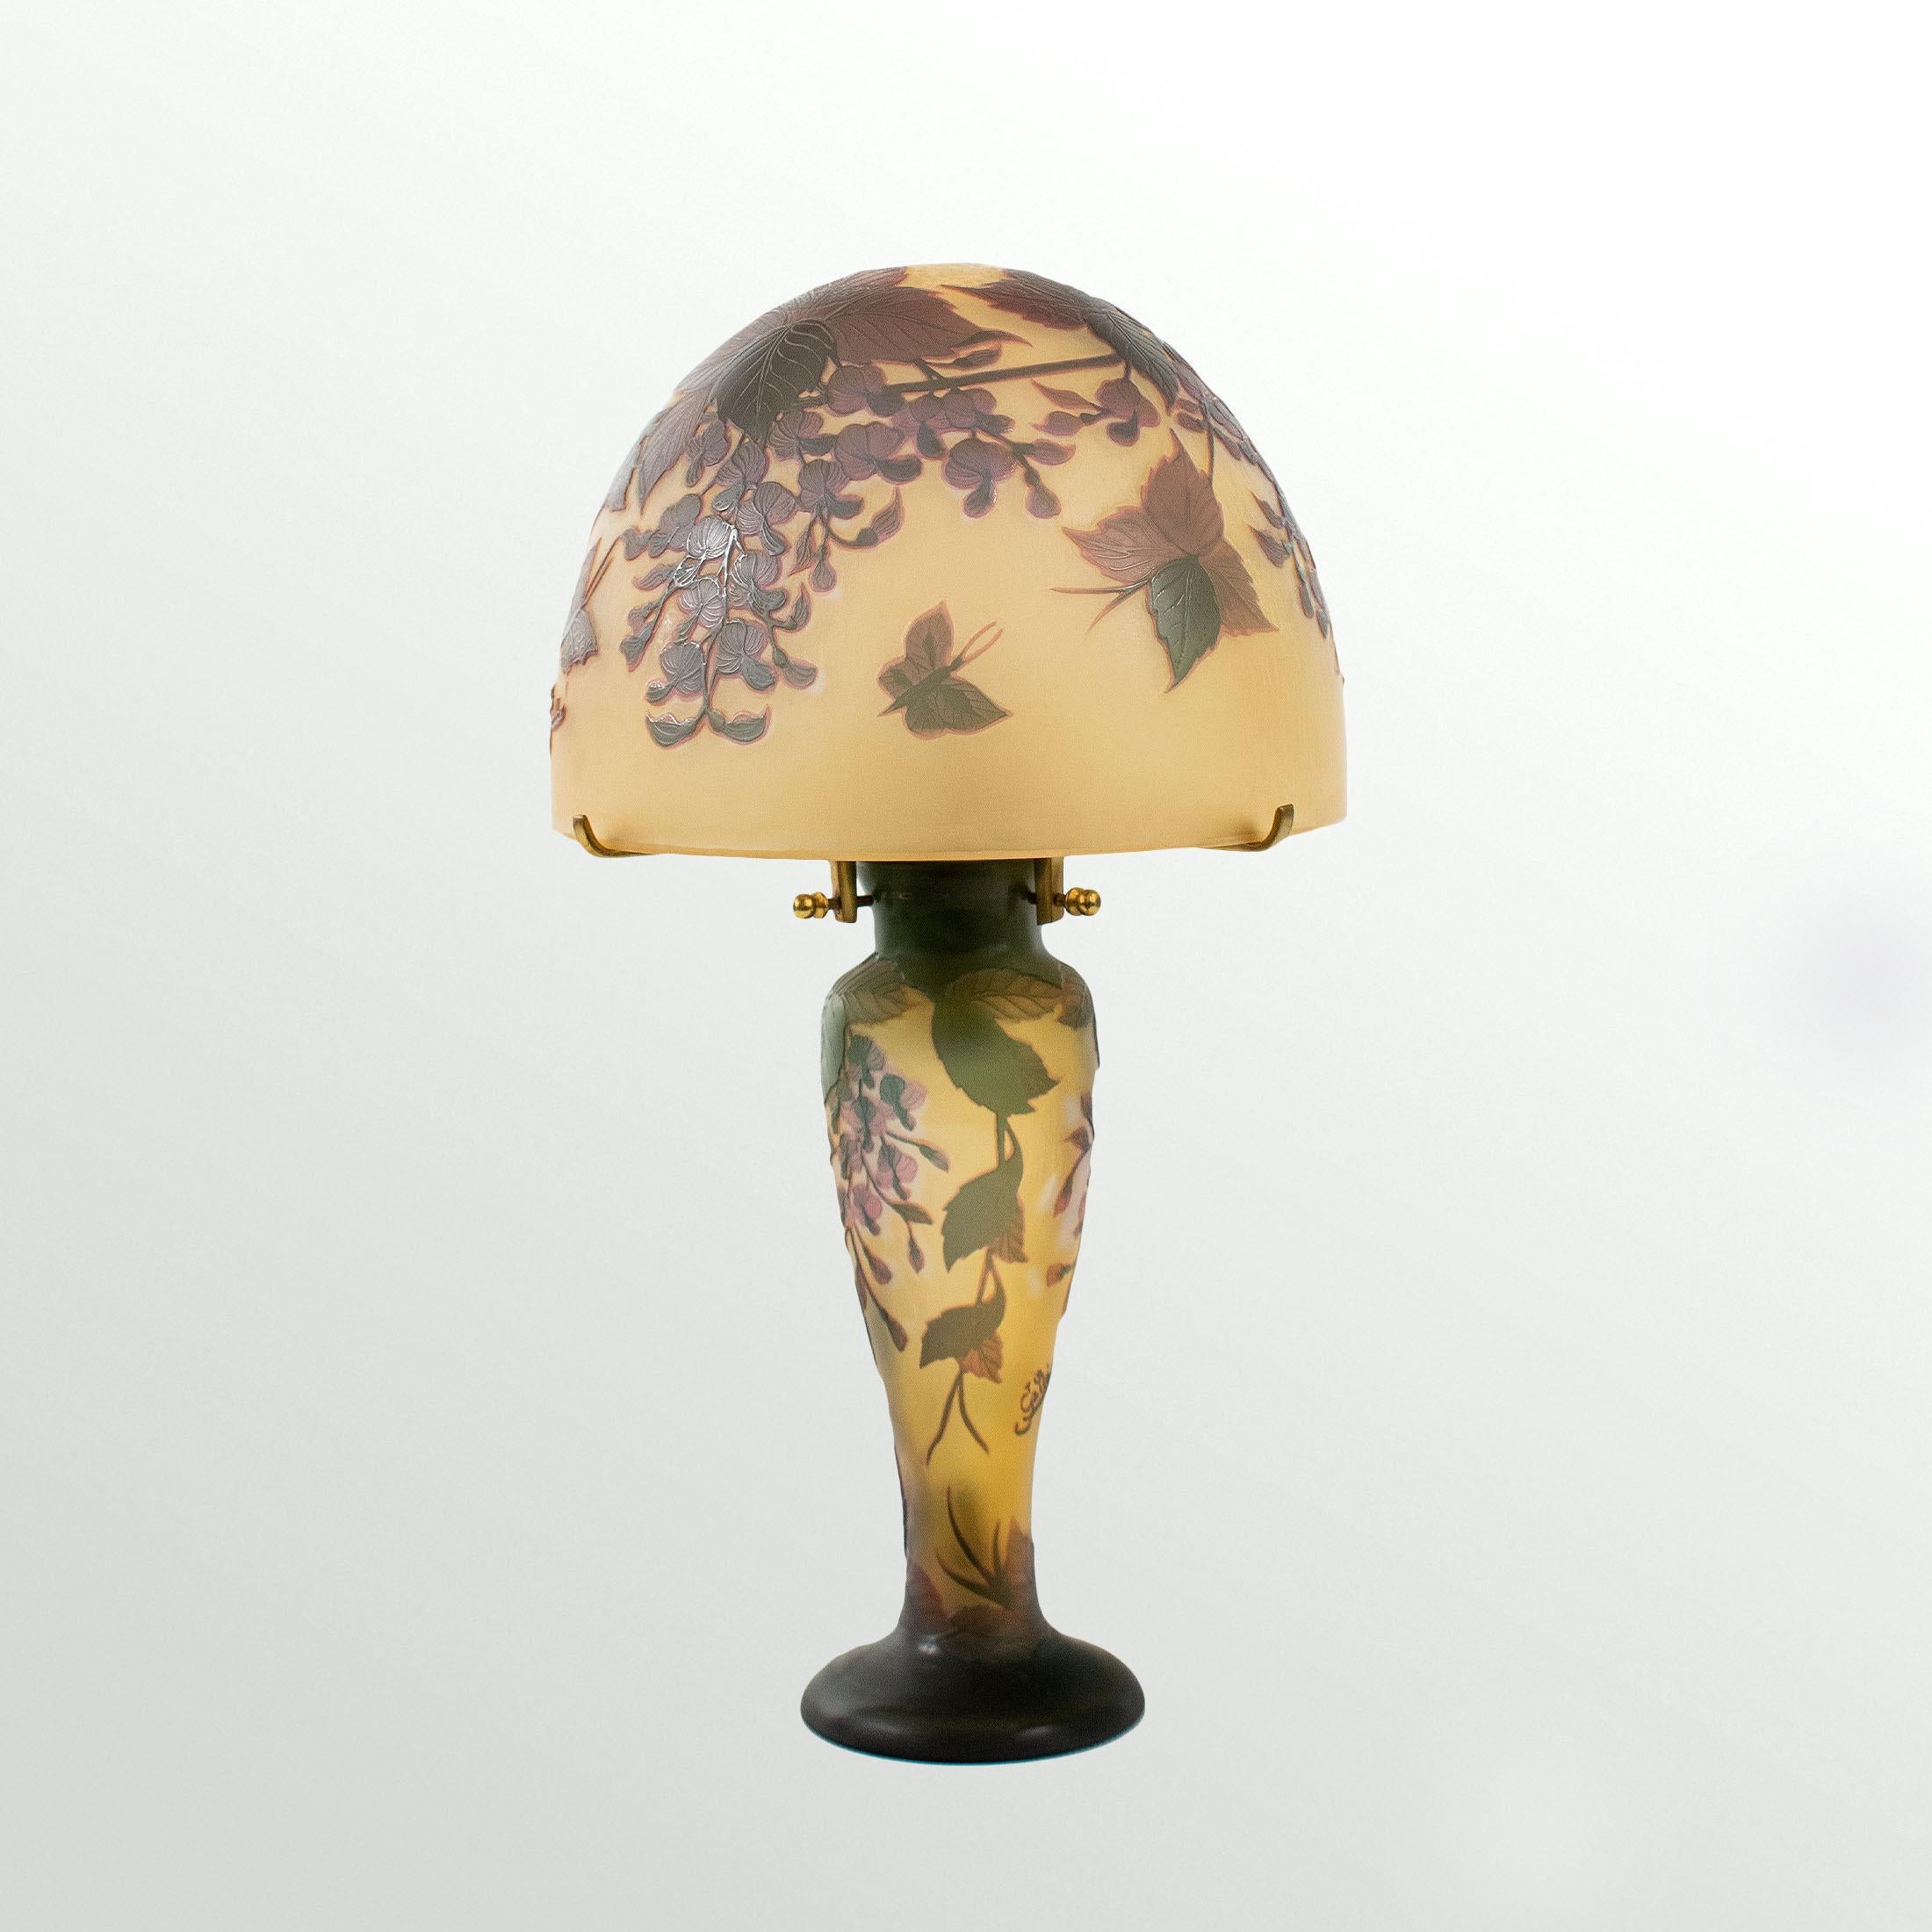 Etched GALLÉ Tip - Elegant Art Nouveau mushroom lamp in acid-etched glass.